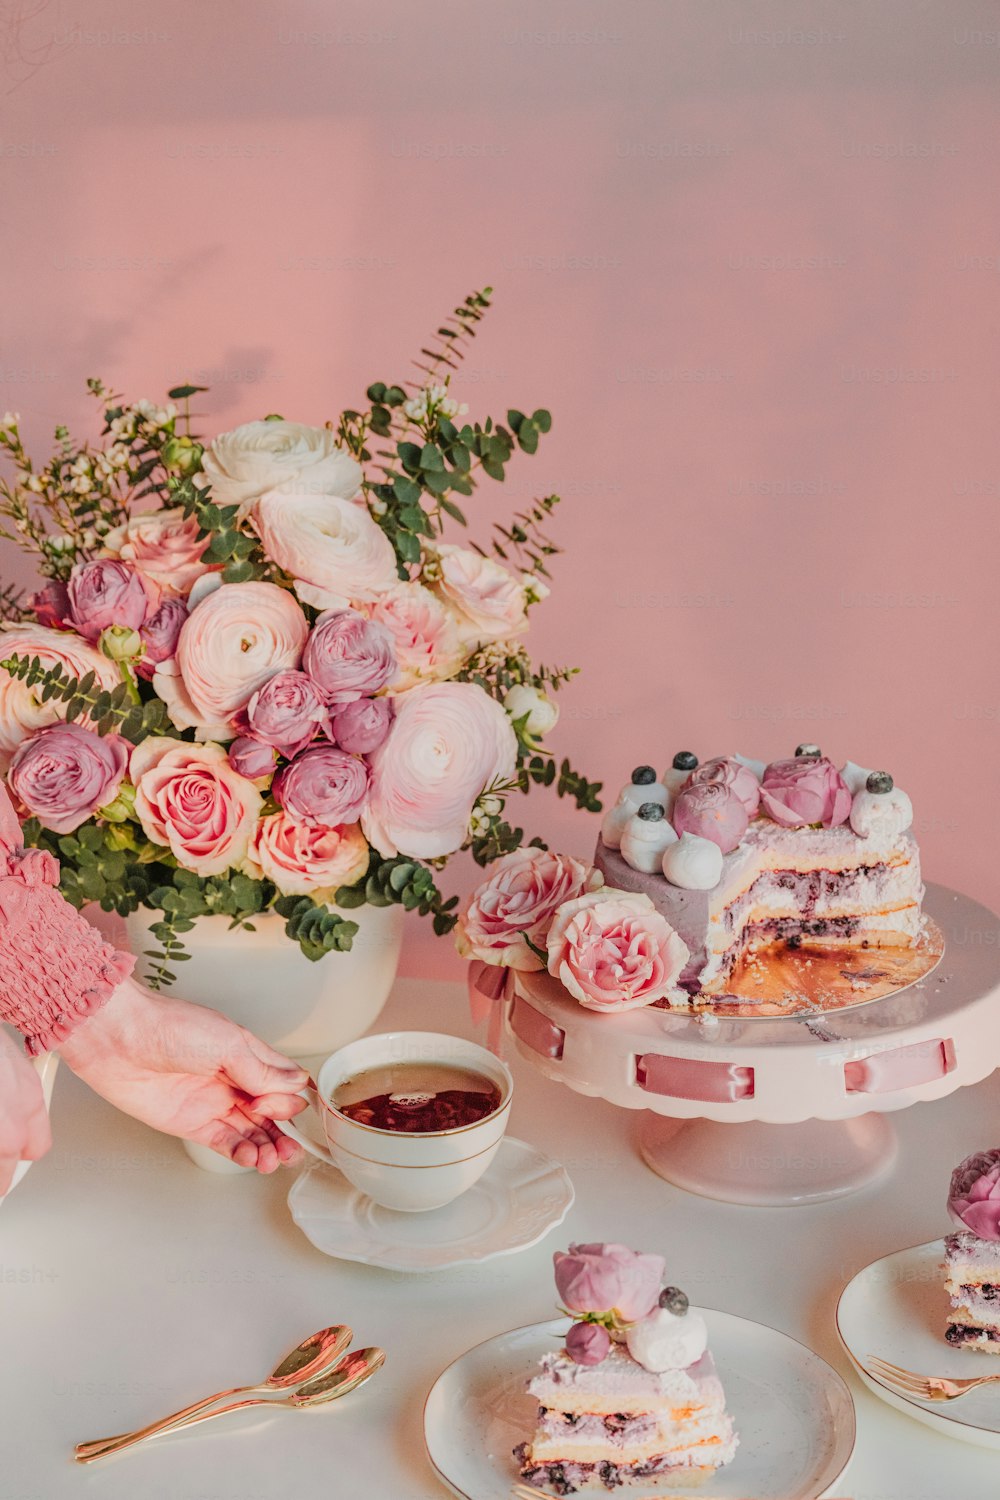 케이크를 얹은 흰색 테이블과 꽃으로 가득 찬 꽃병